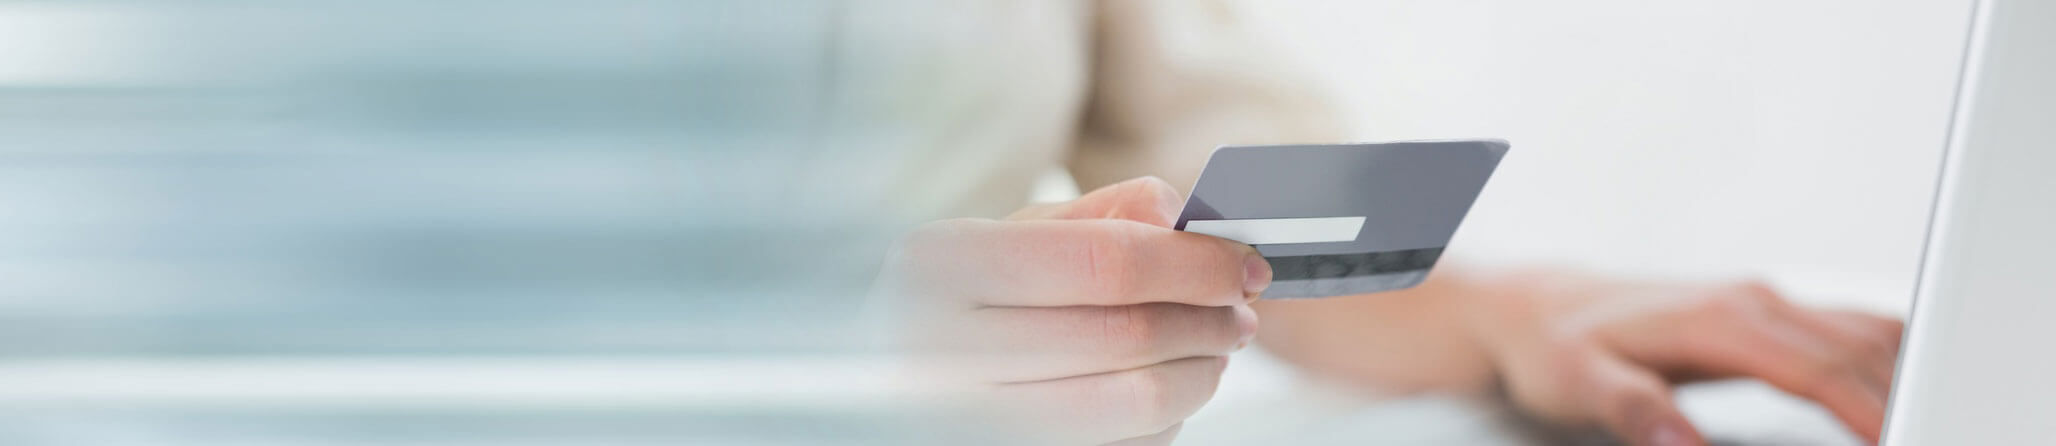 Mit Mastercard ohne PIN bezahlen » Wann braucht man die PIN?